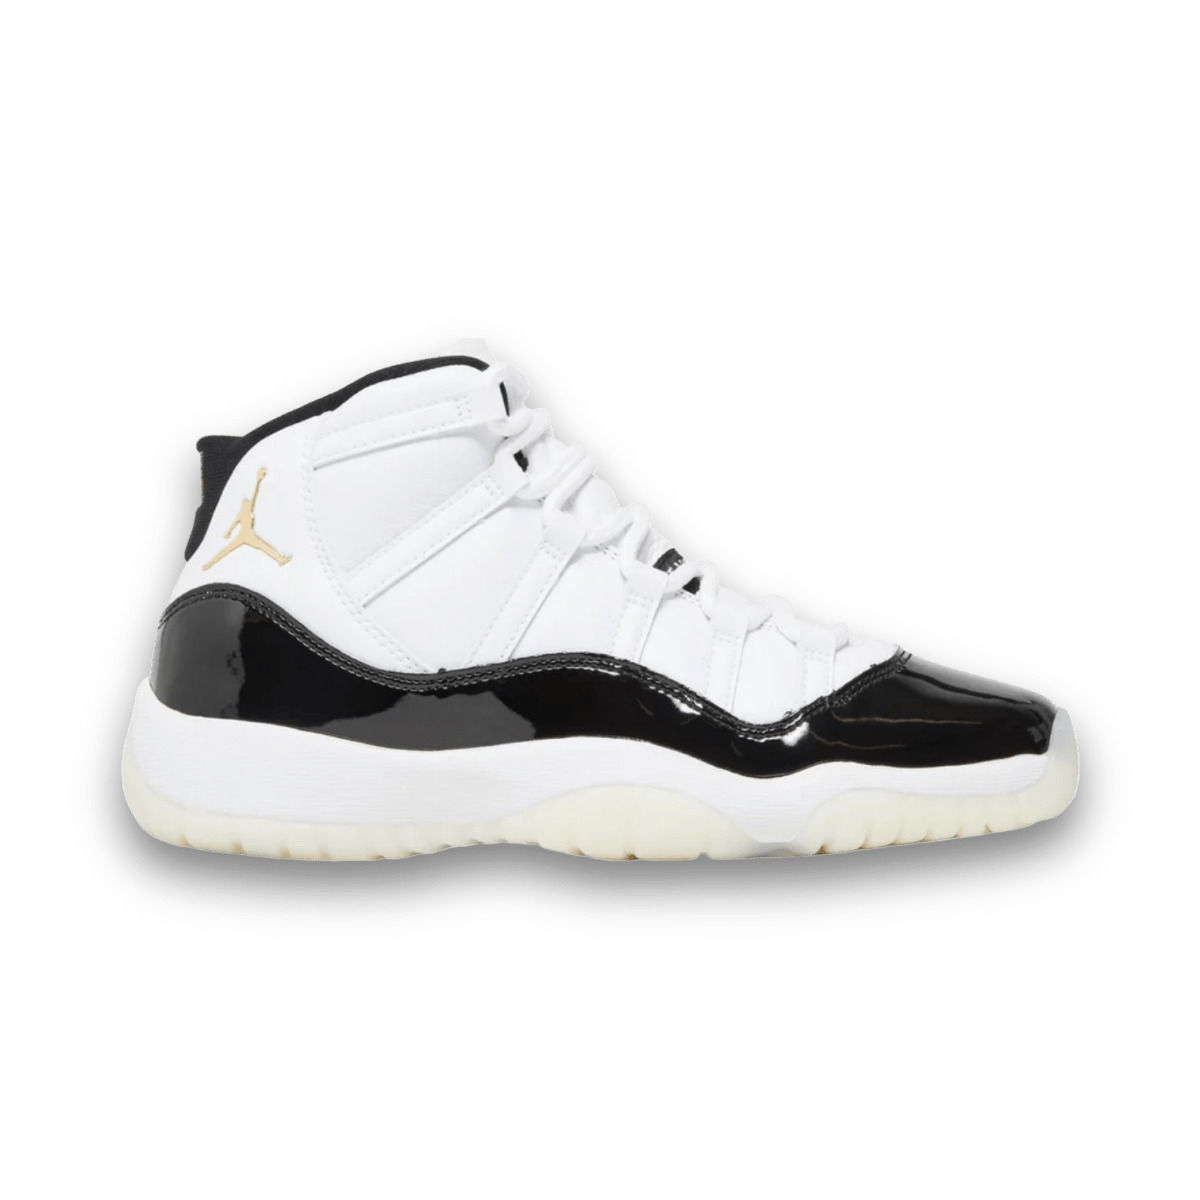 Air Jordan 11 Retro 'Gratitude / Defining Moments' - Grade School - High Sneaker - Jawns on Fire Sneakers & Streetwear